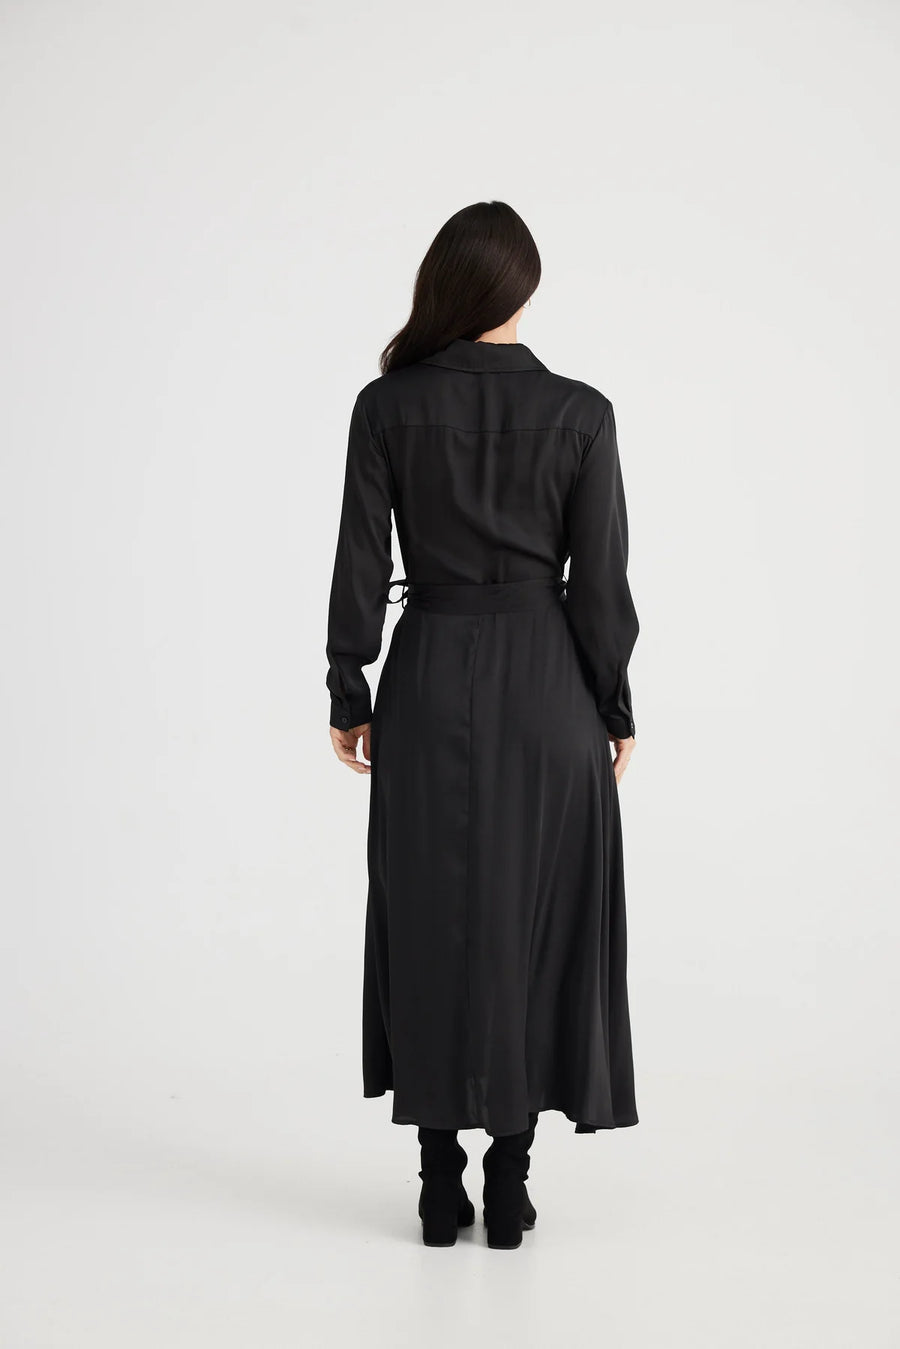 Rossellini 3/4 sleeve Dress - Black